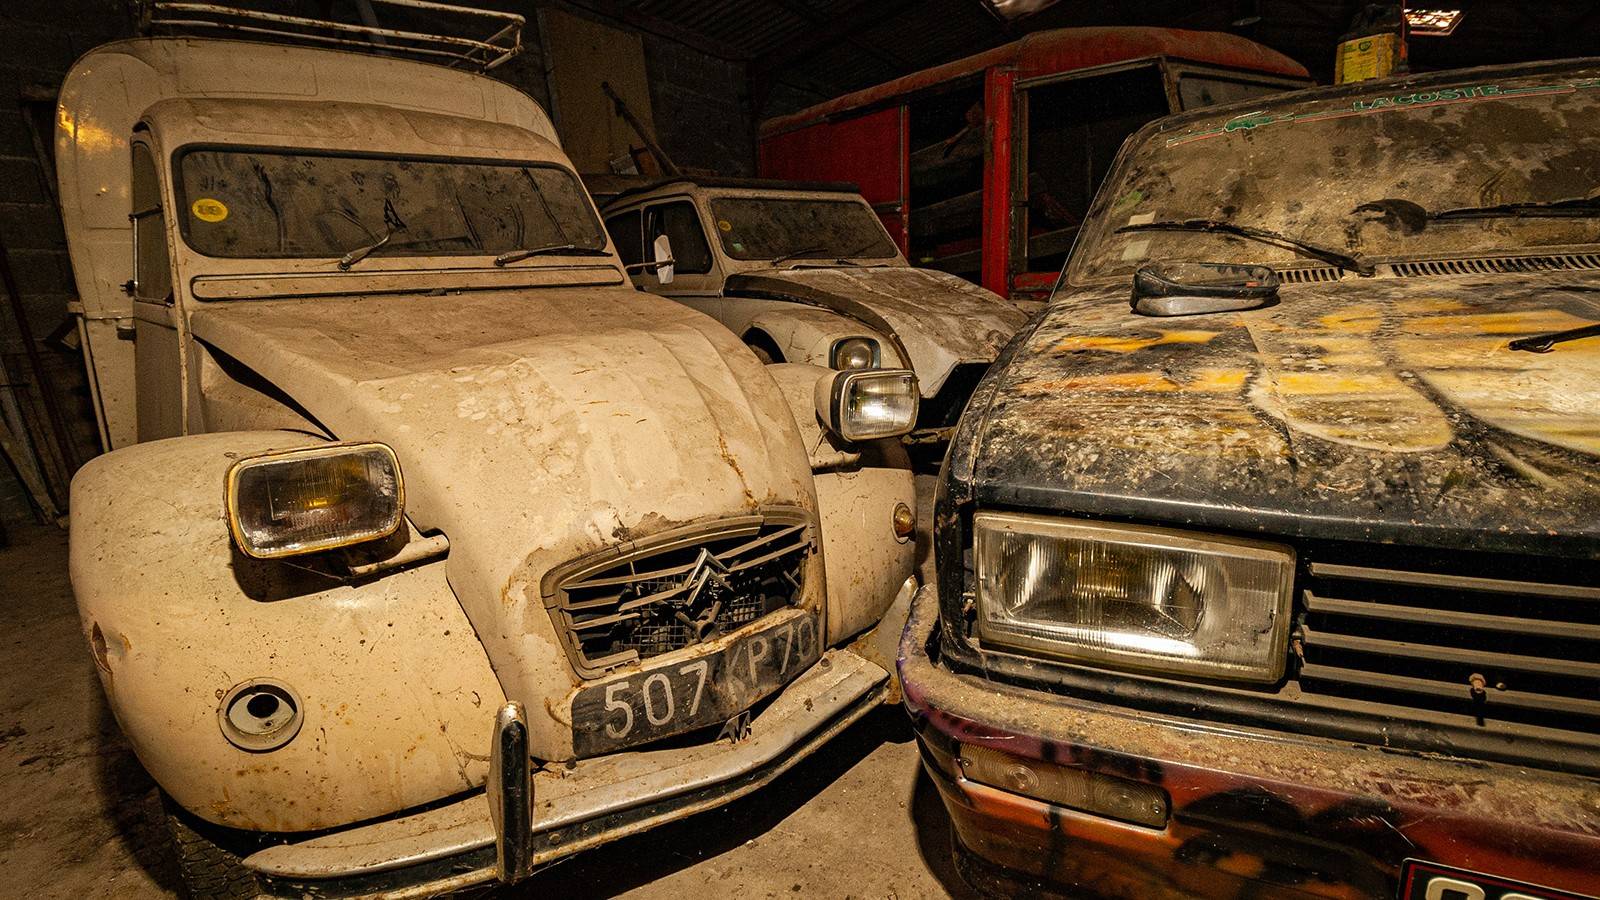 А вы знали про такие? 7 редких авто, которые покупают россияне